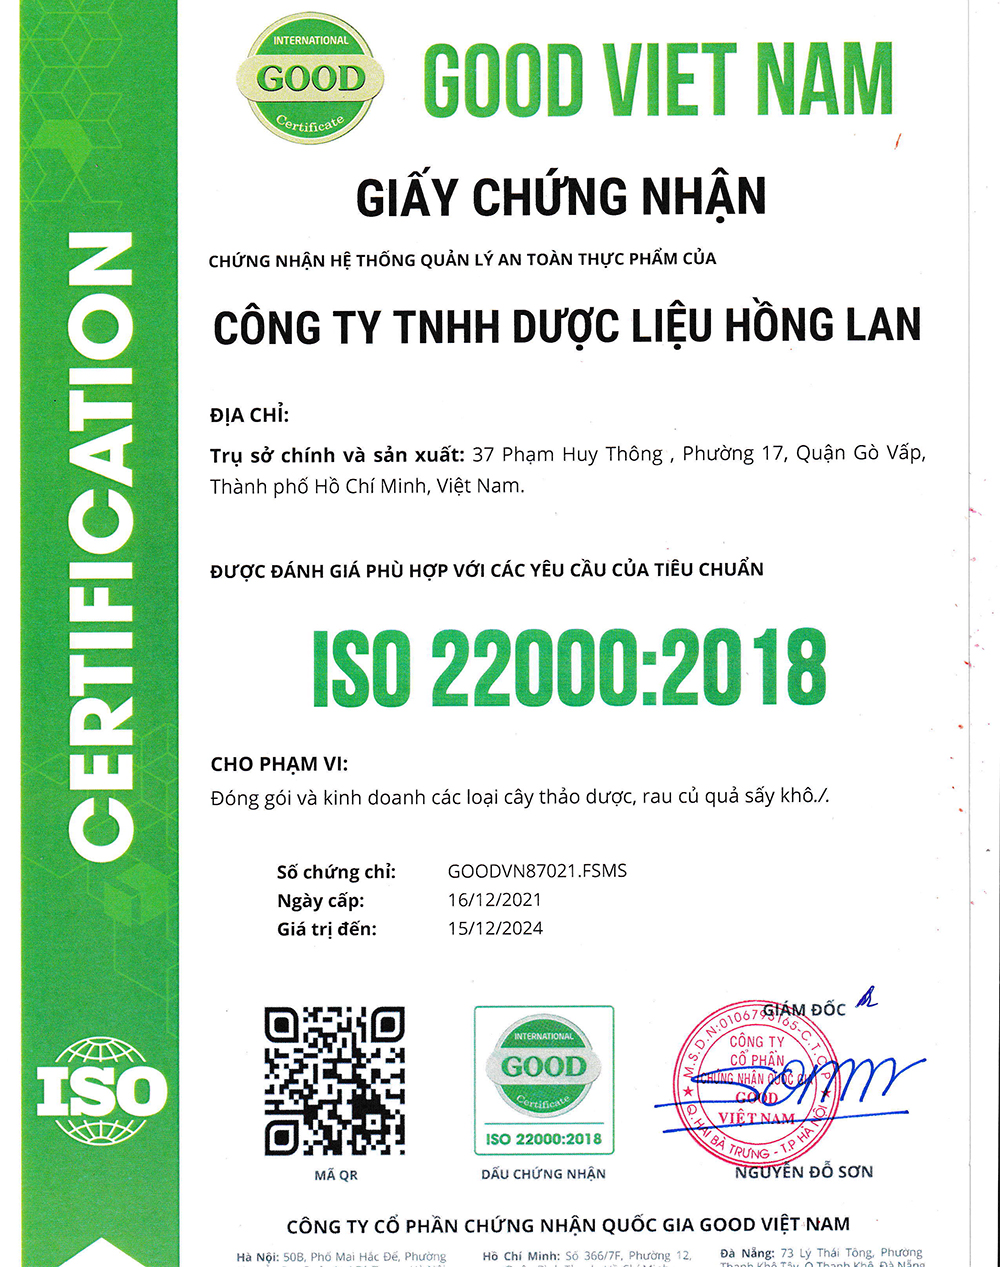 Trà túi lọc Rễ Cà Gai Leo được sản xuất bởi Công ty TNHH Dược Liệu Hồng Lan theo hệ thống quản lý an toàn thực phẩm ISO 22000:2018 được cấp bởi công ty cổ phần chứng nhận Quốc Gia Good Việt Nam (Good Viet Nam Certification Joint Stock Company)